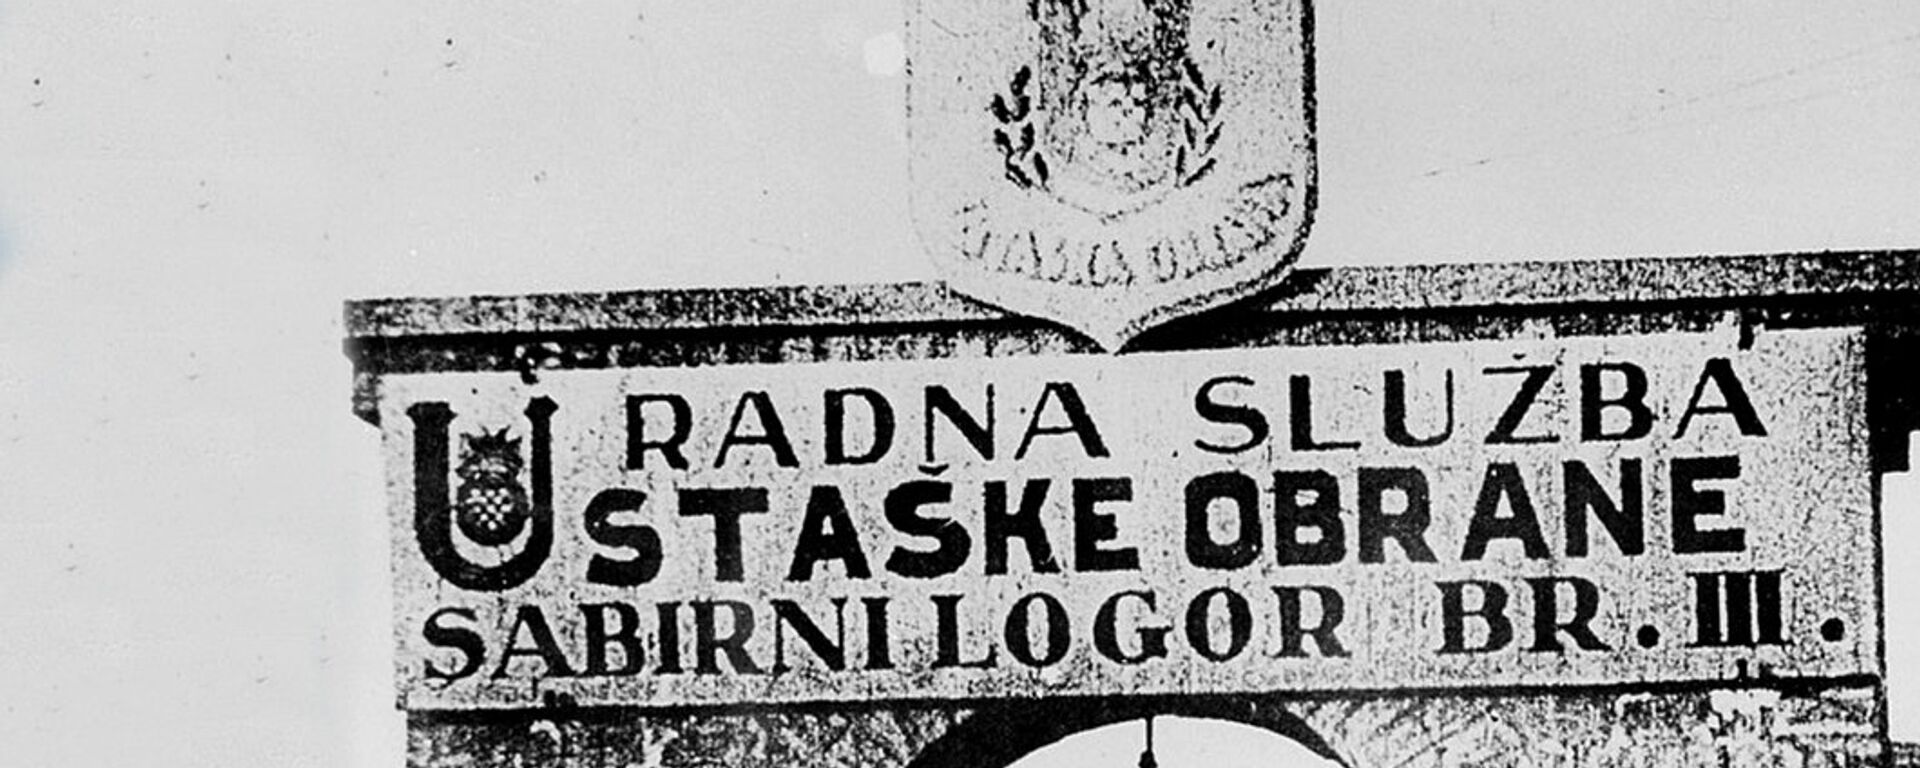 Glavni ulaz u logor III Ciglana - Jasenovac - Sputnik Srbija, 1920, 09.11.2020